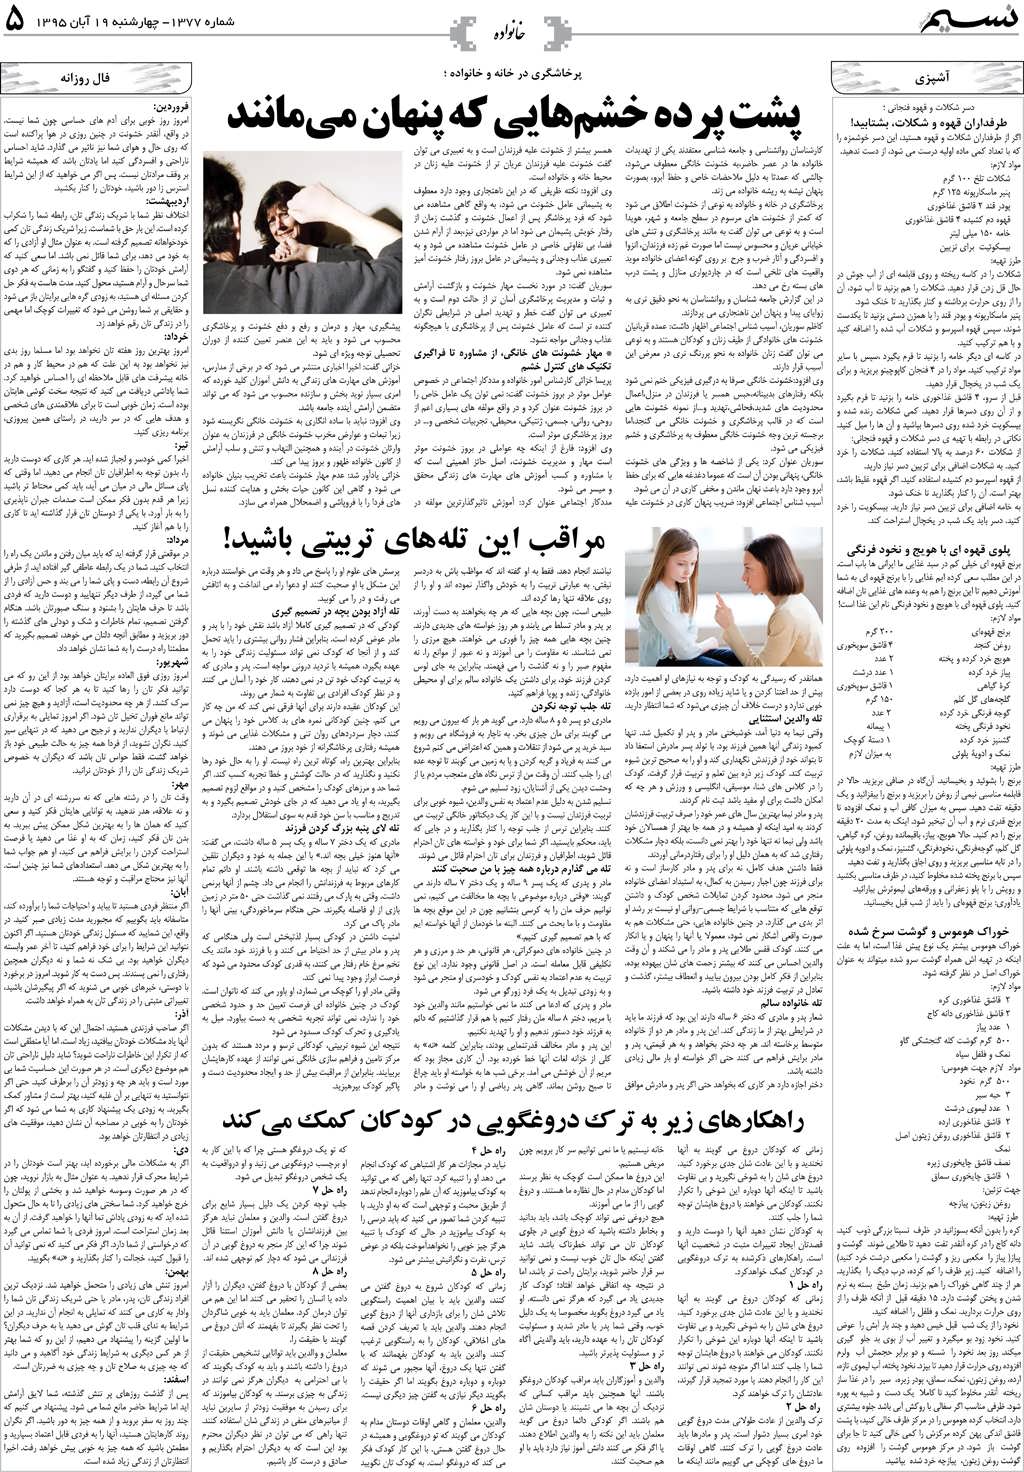 صفحه خانواده روزنامه نسیم شماره 1377